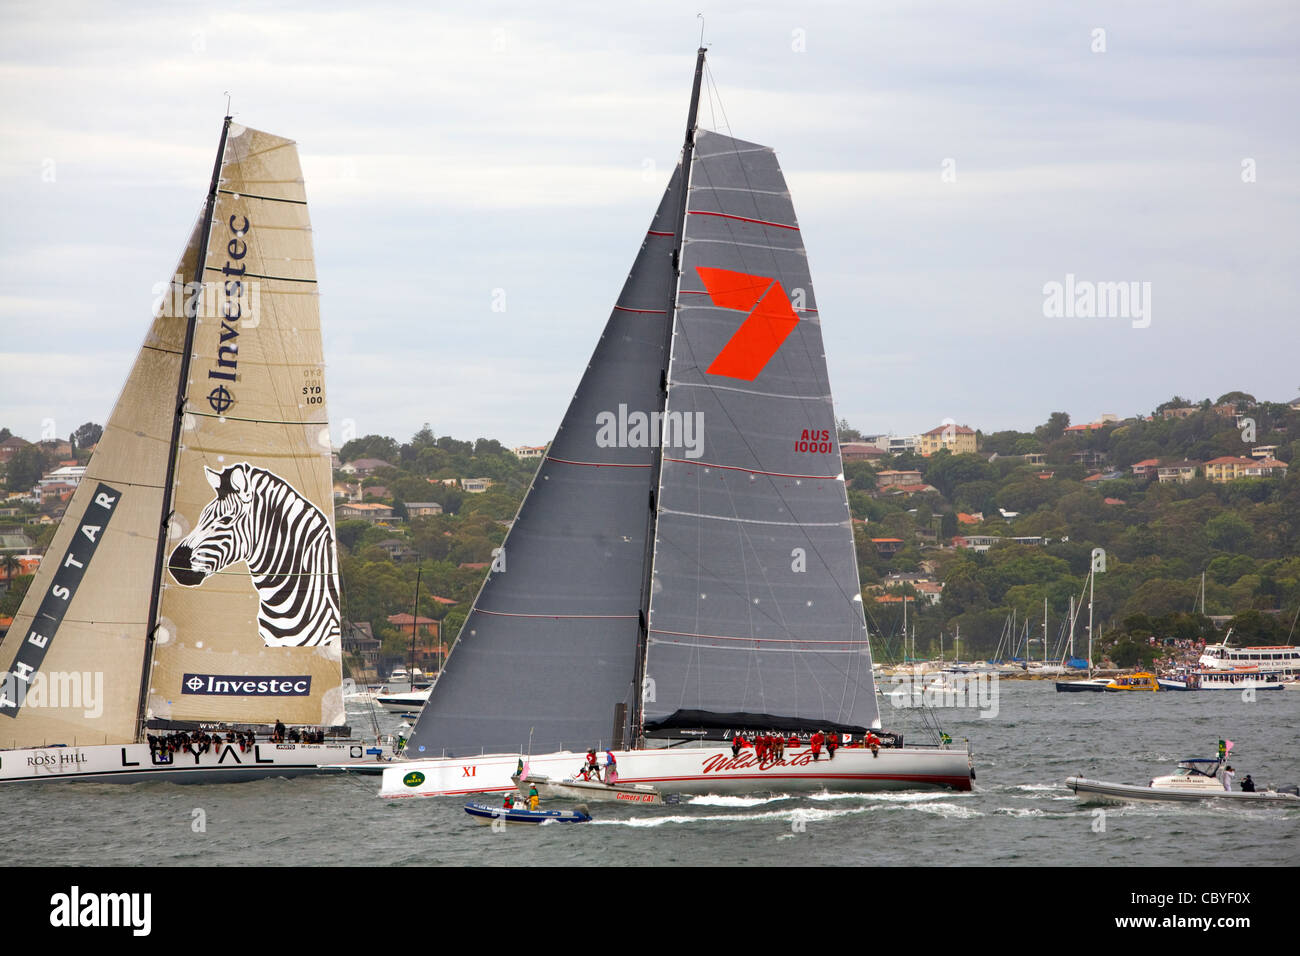 Investec leale e selvaggia avena x1 all'inizio della gara di yacht Sydney to Hobart del 2011. Questi yacht finirono primo e secondo, Sydney, NSW, Australia Foto Stock